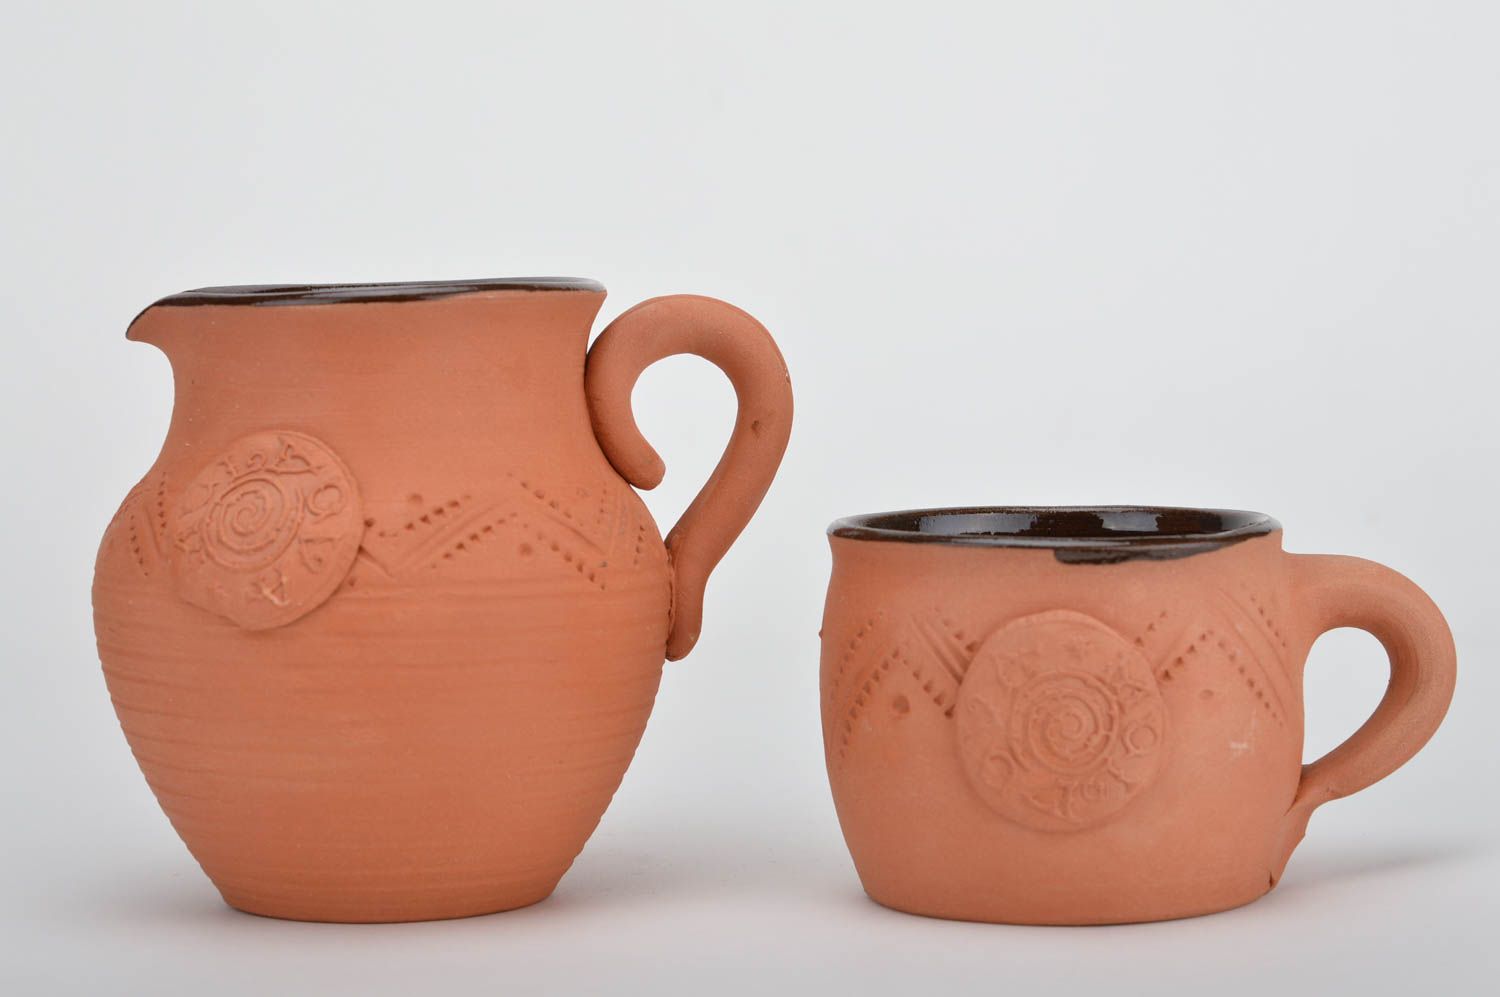 20 oz coffee ceramic pitcher with coffee cup glazed inside 1,3 lb photo 1